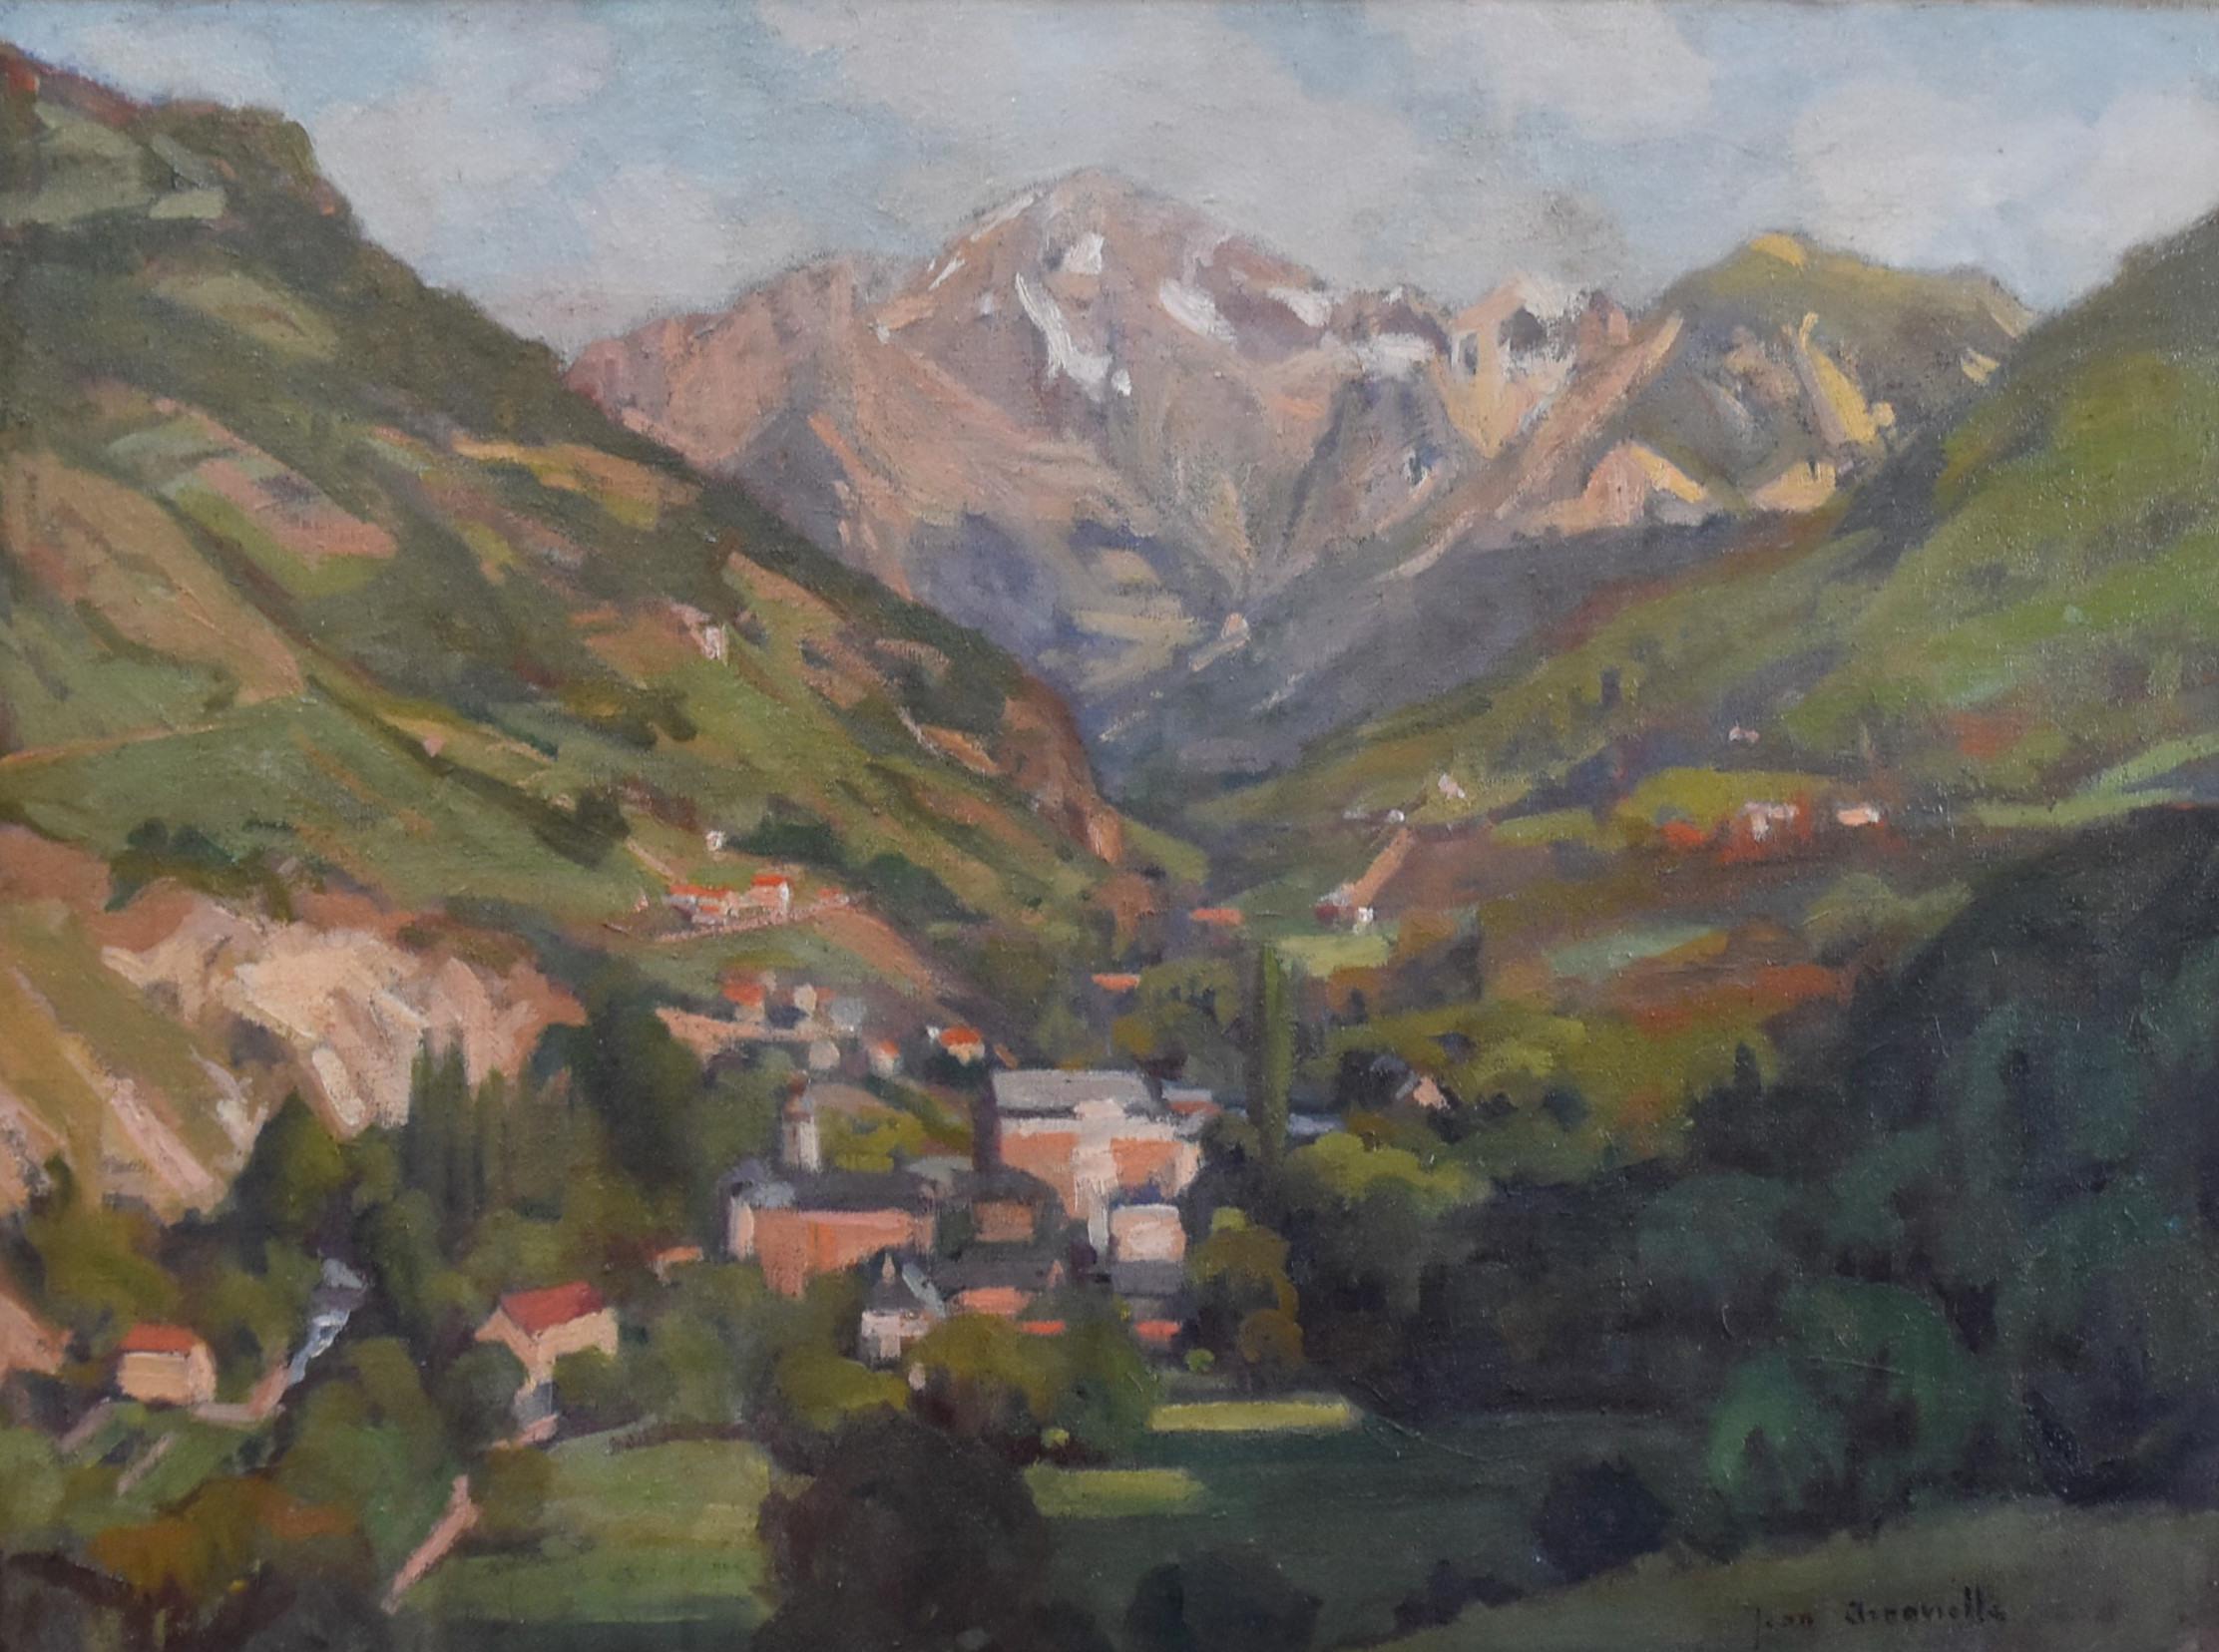 Jean Arnavielle (1881-1961) 
La Vanoise,  Un paysage de montagne 
Signé en bas à droite 
Huile sur toile, 46 x 61 cm 
dans son cadre original 63 x 78 cm

Jean Arnavielle était un peintre français, né en 1881. 
Il est surtout connu pour ses paysages